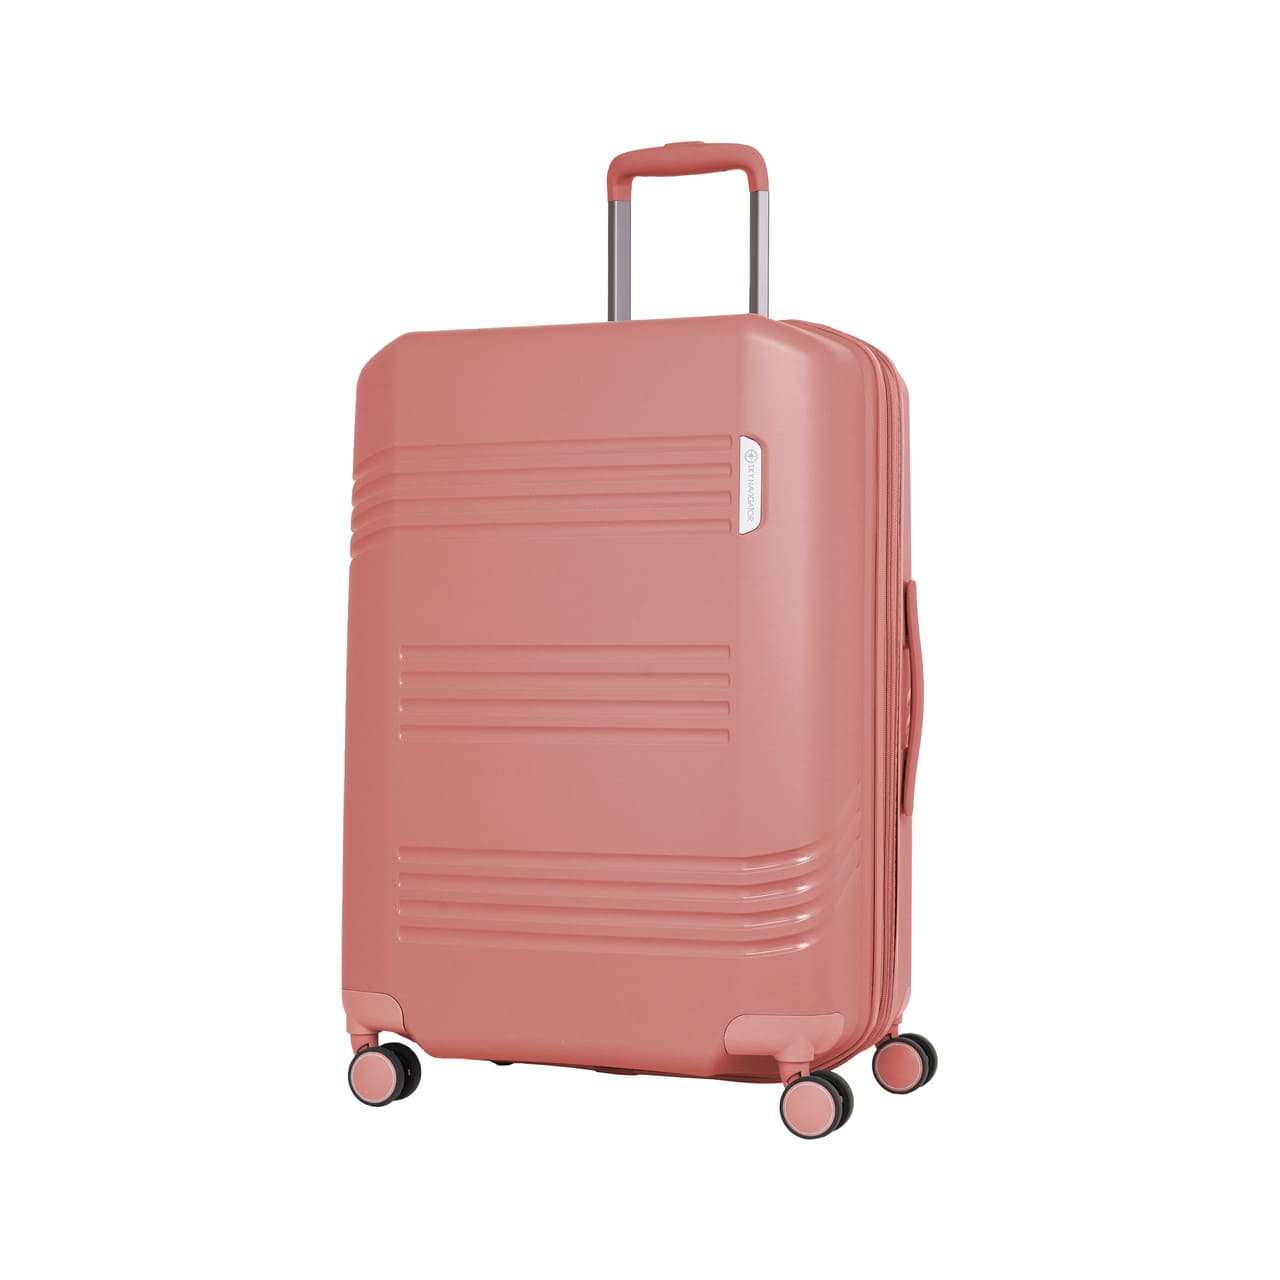 SKYNAVIGATORのスーツケースSK-0872-63のピンクの正面振り画像